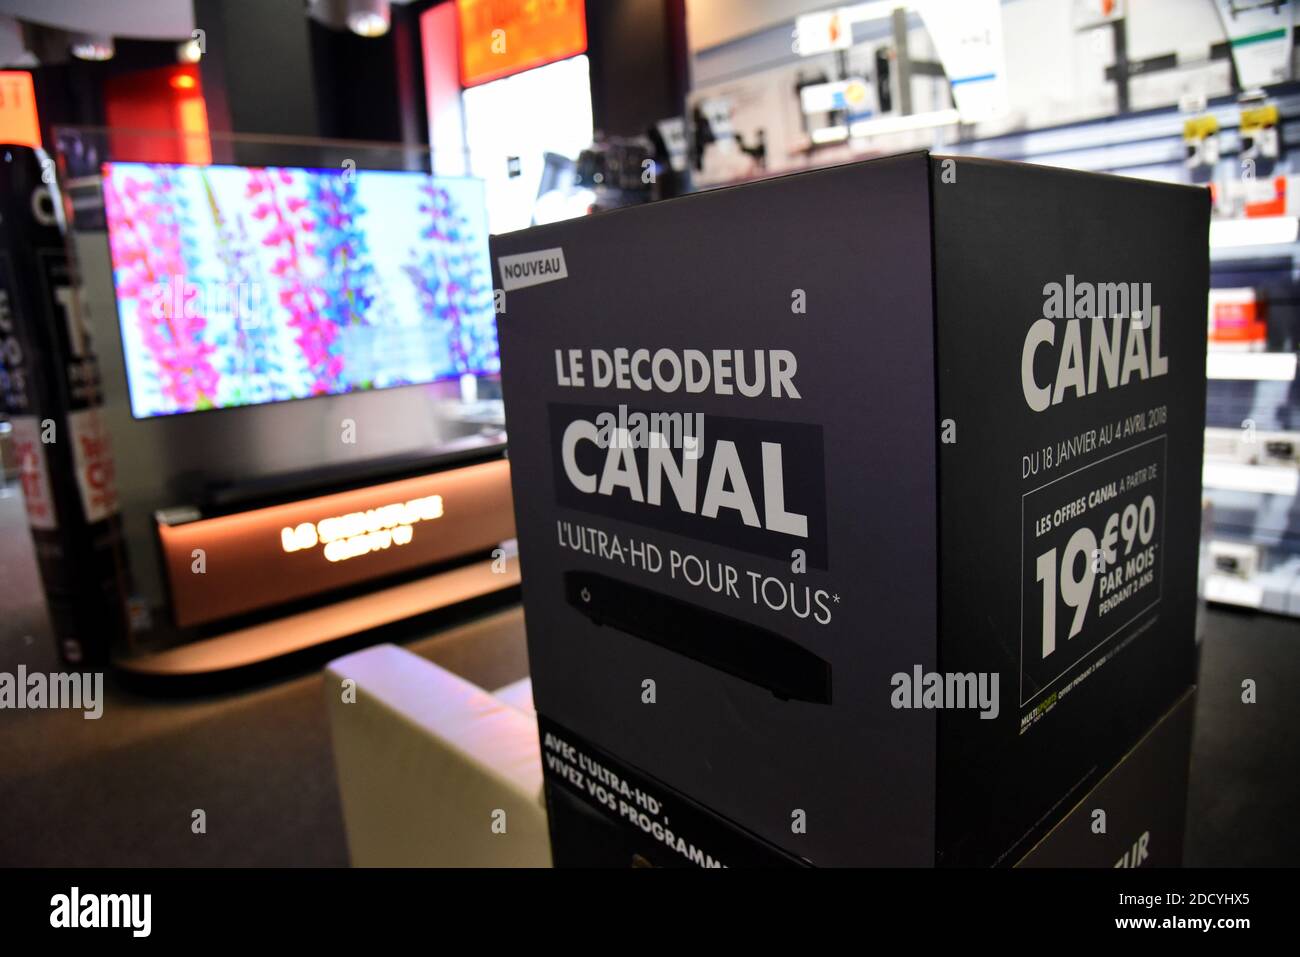 Canal+-Produkte sind in einem Einzelhandelsgeschäft in Paris, Frankreich, am 7. März 2018 zu sehen. In einer Pressemitteilung kündigte Canal+ an, die Verbreitung der Kanäle der TF1-Gruppe zu beenden, weil sie mit der Gruppe, deren „unvernünftigen und unbegründeten finanziellen Anforderungen“ sie angeprangert hatte, keine Handelsvereinbarung treffen konnte. „die Canal+-Gruppe bedauert die Pattsituation in den Verhandlungen mit der TF1-Gruppe nach achtzehn Monaten der Diskussionen und ist gezwungen, die Verteilung der Kanäle TF1, TMC, TFX, TF1 Séries Films, LCI und ihre zugehörigen Dienste zu unterbrechen“, so die Erklärung. Foto von Stockfoto